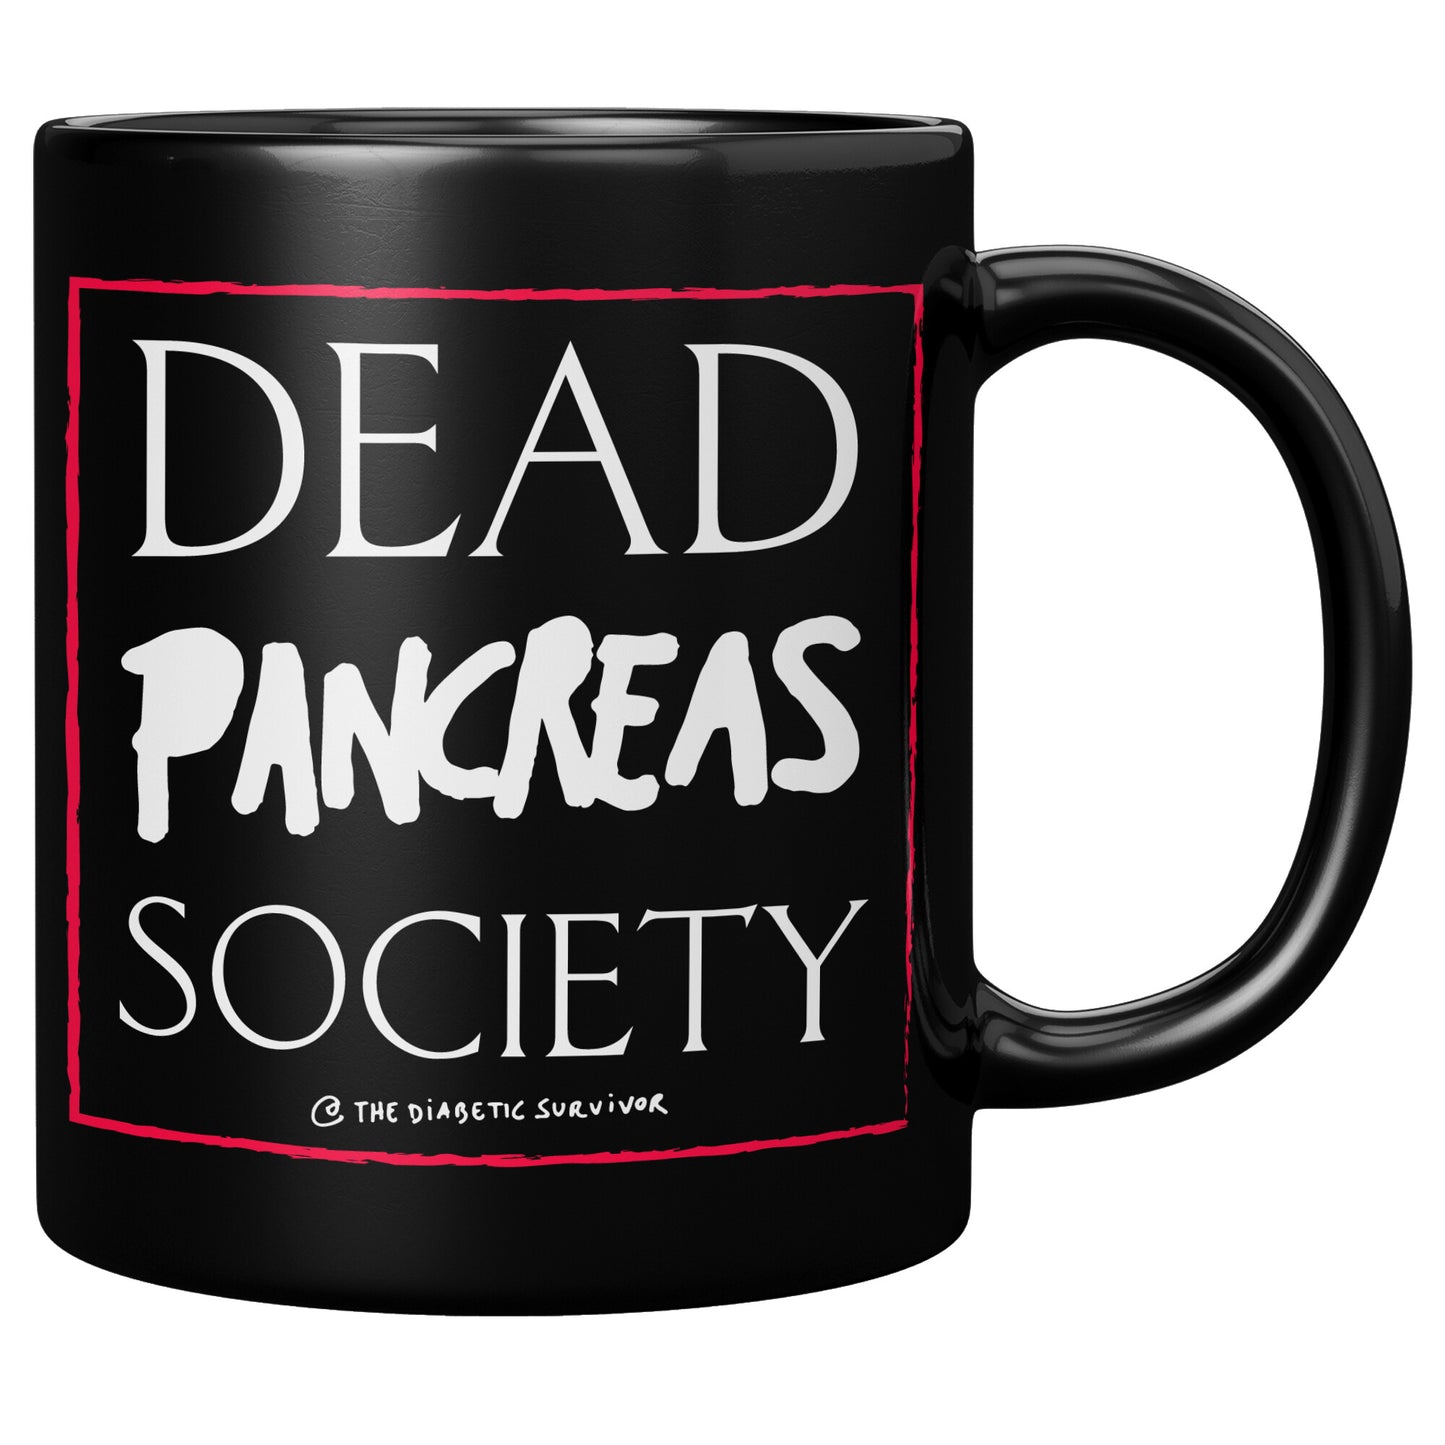 Dead Pancreas Society mug 11oz black